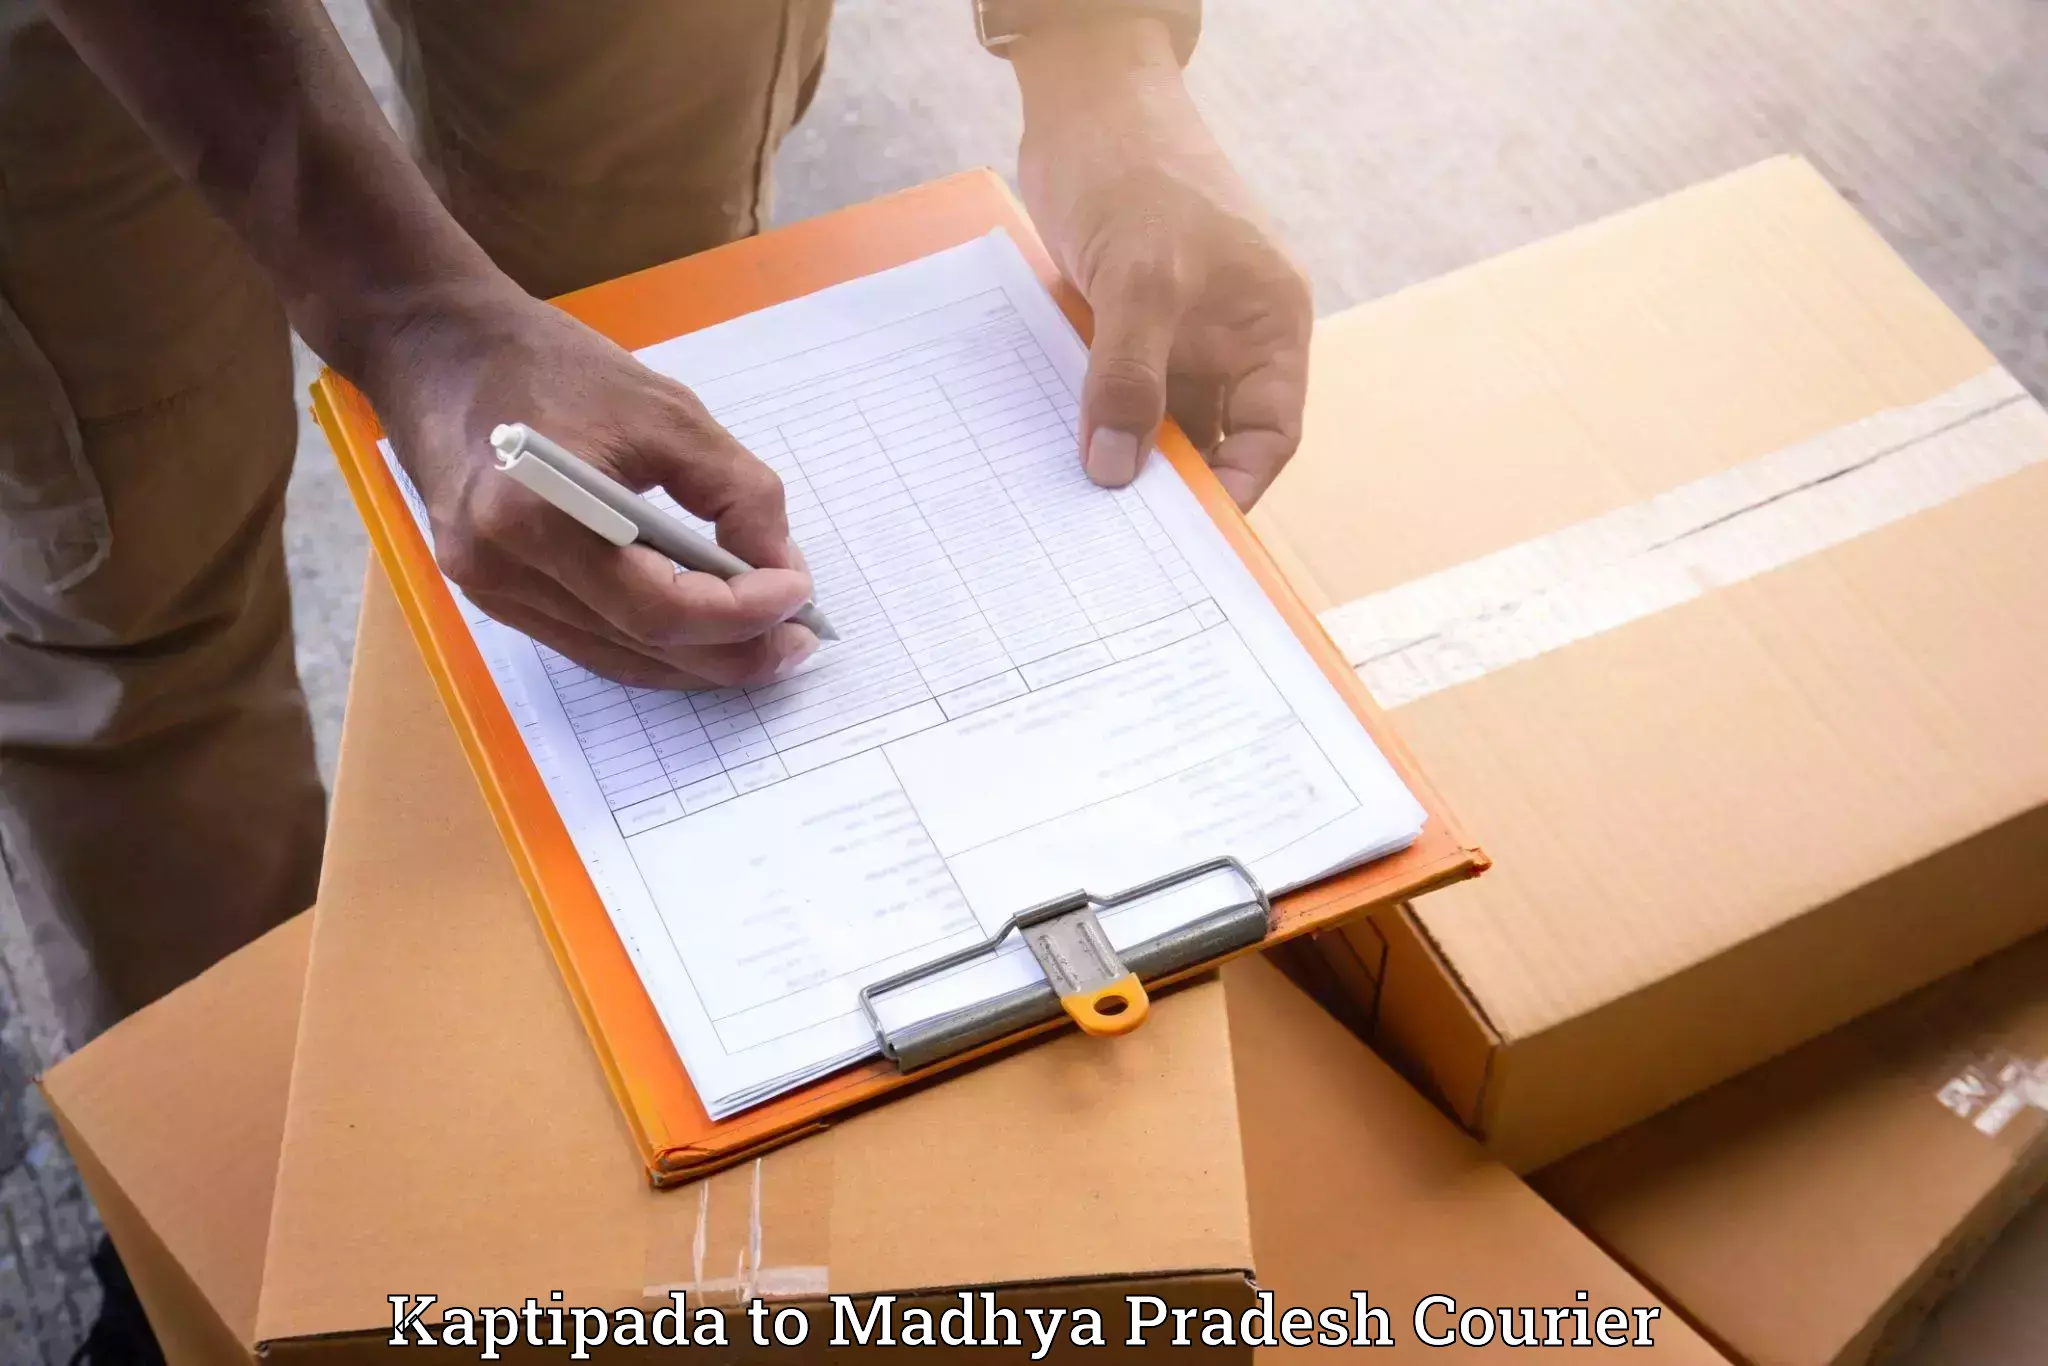 Moving and handling services Kaptipada to Madhya Pradesh